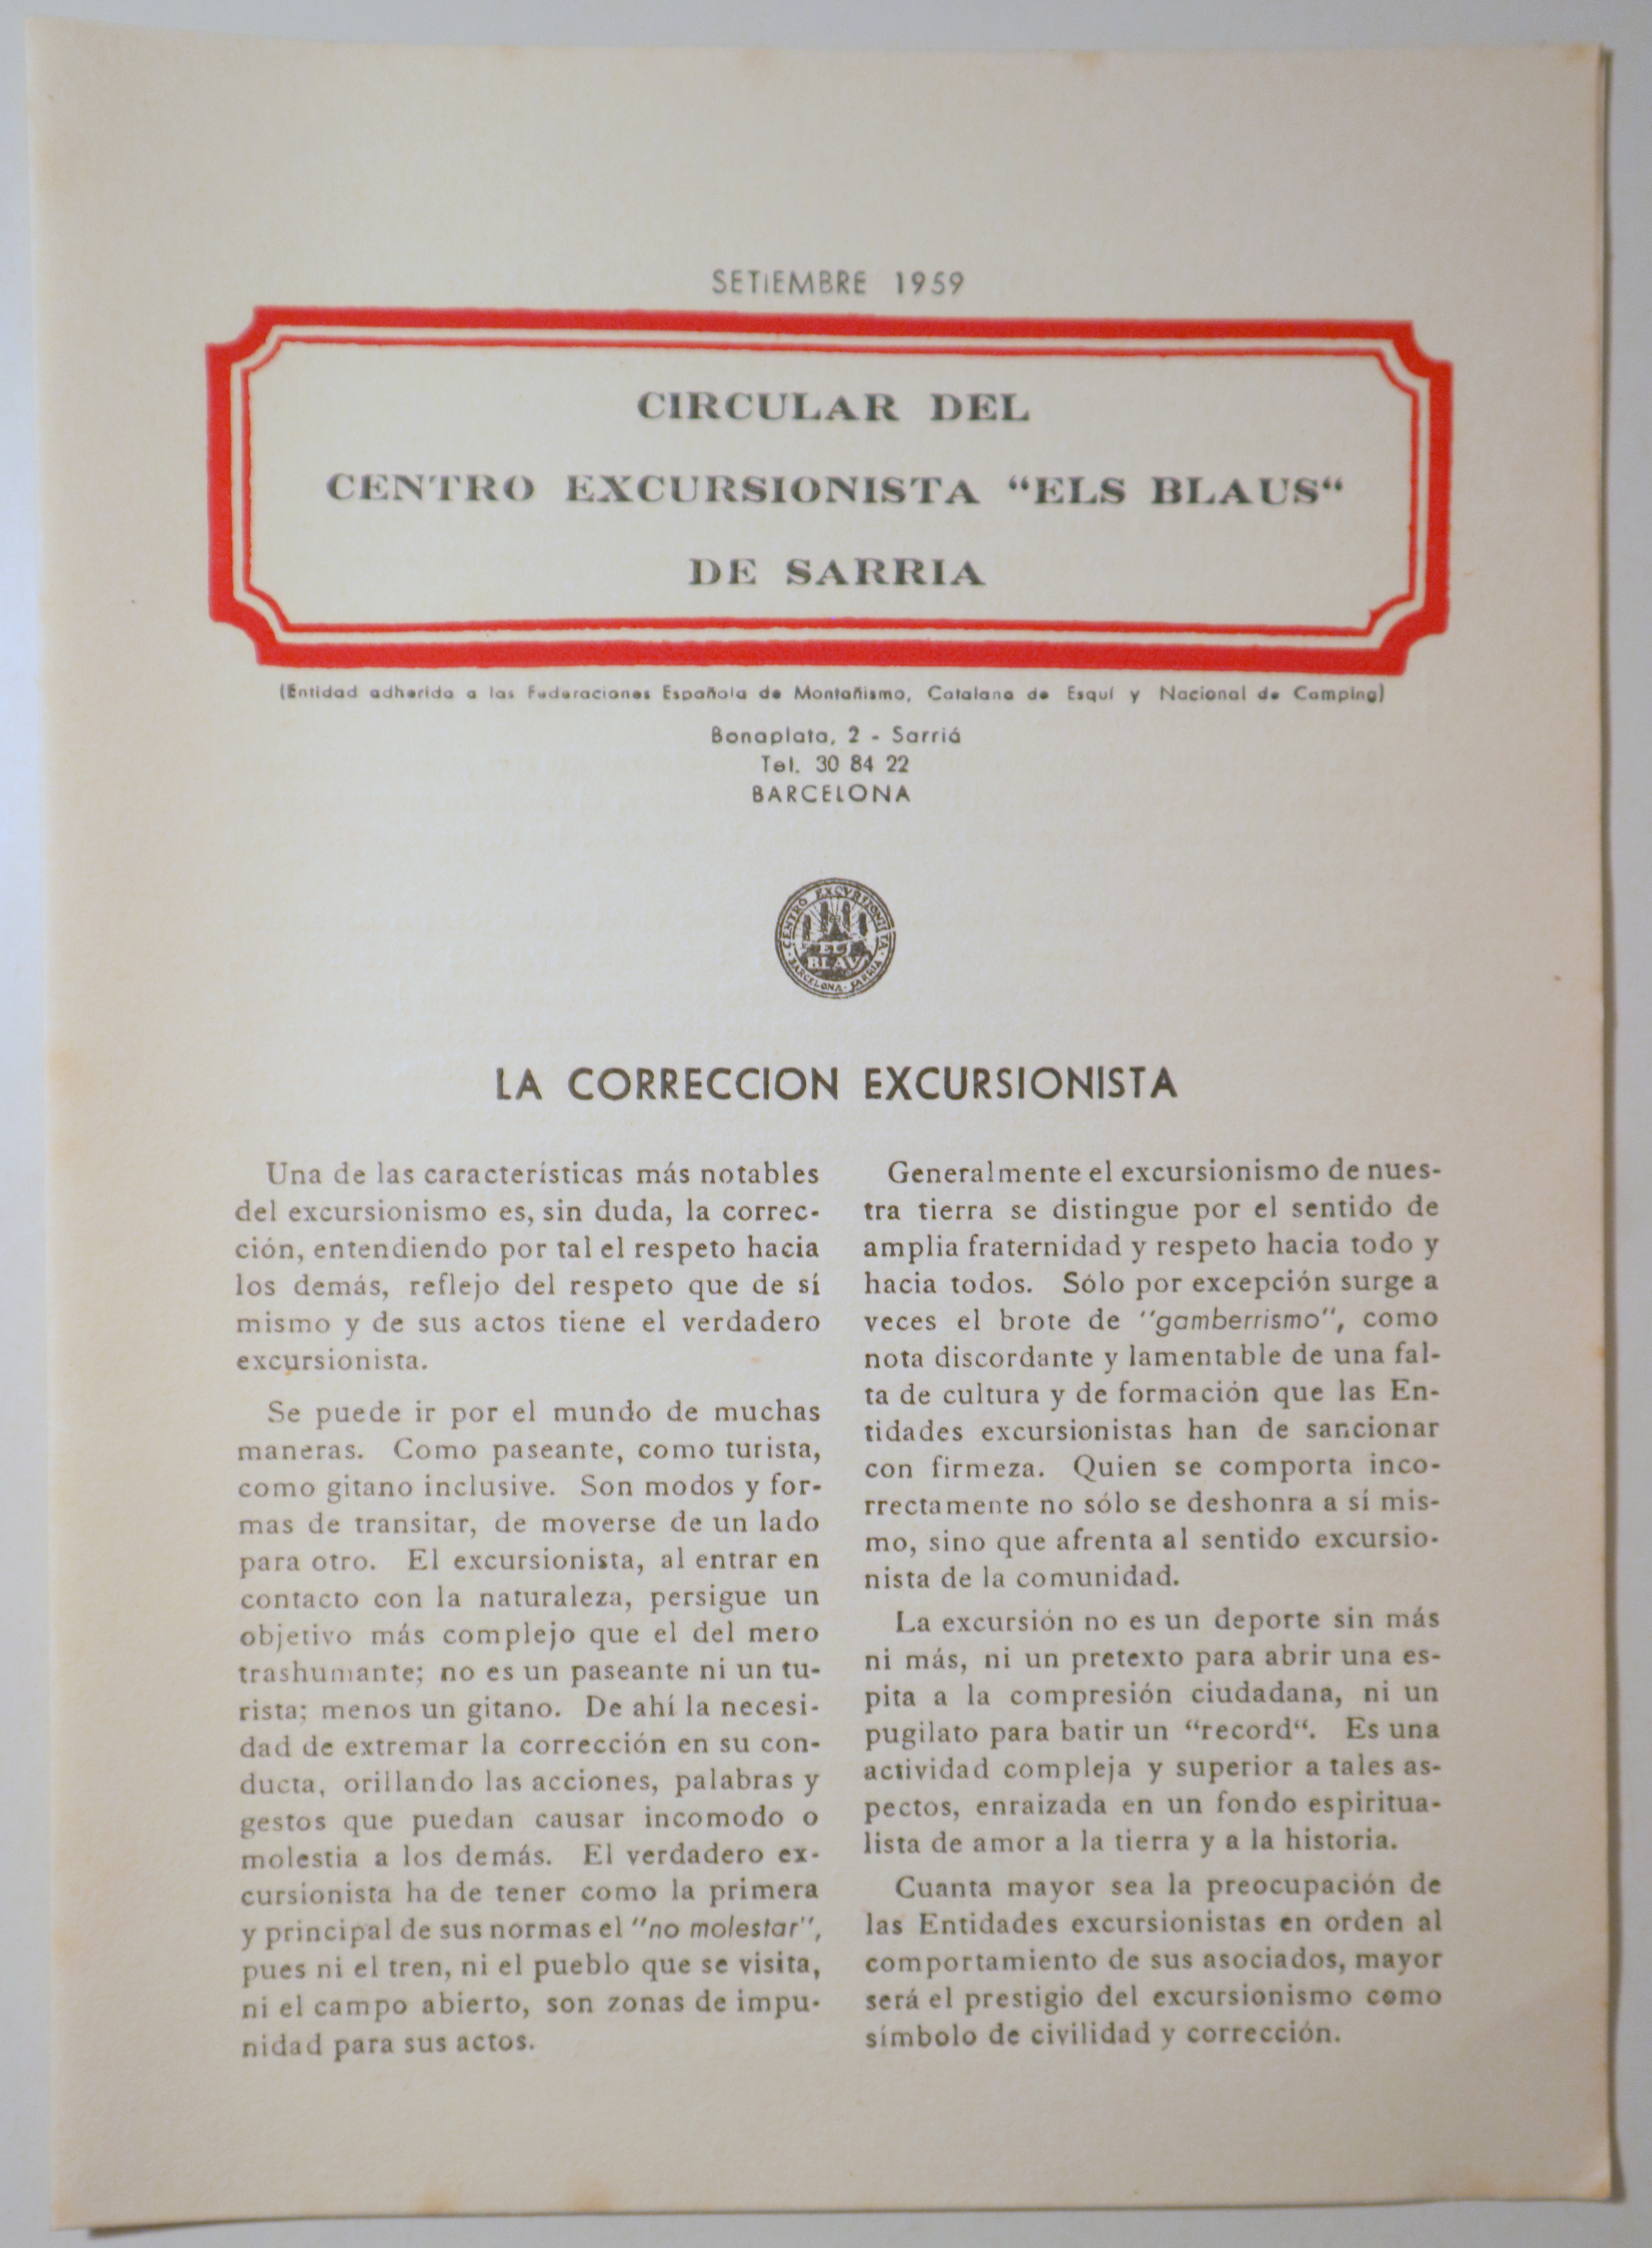 CIRCULAR DEL CENTRO EXCURSIONISTA "ELS BLAUS" DE SARRIÀ. Setiembre 1959 - Barcelona 1959